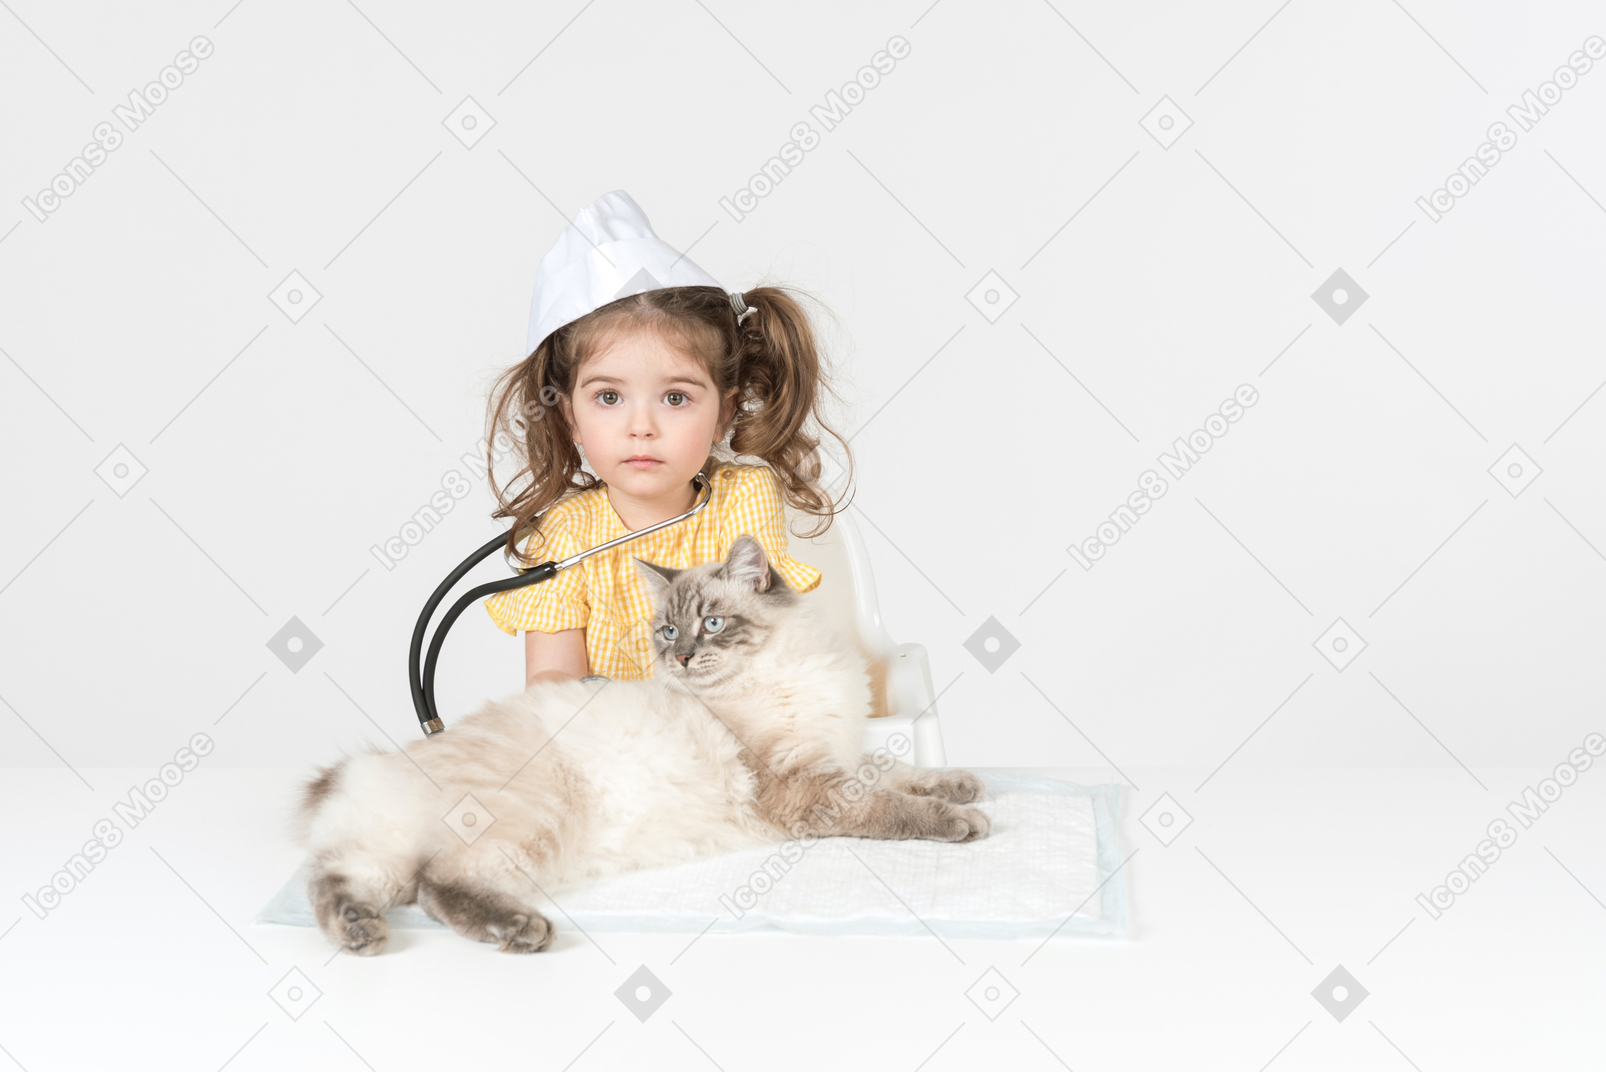 Bambina con stetoscopio e cappello medico che indossa un gatto